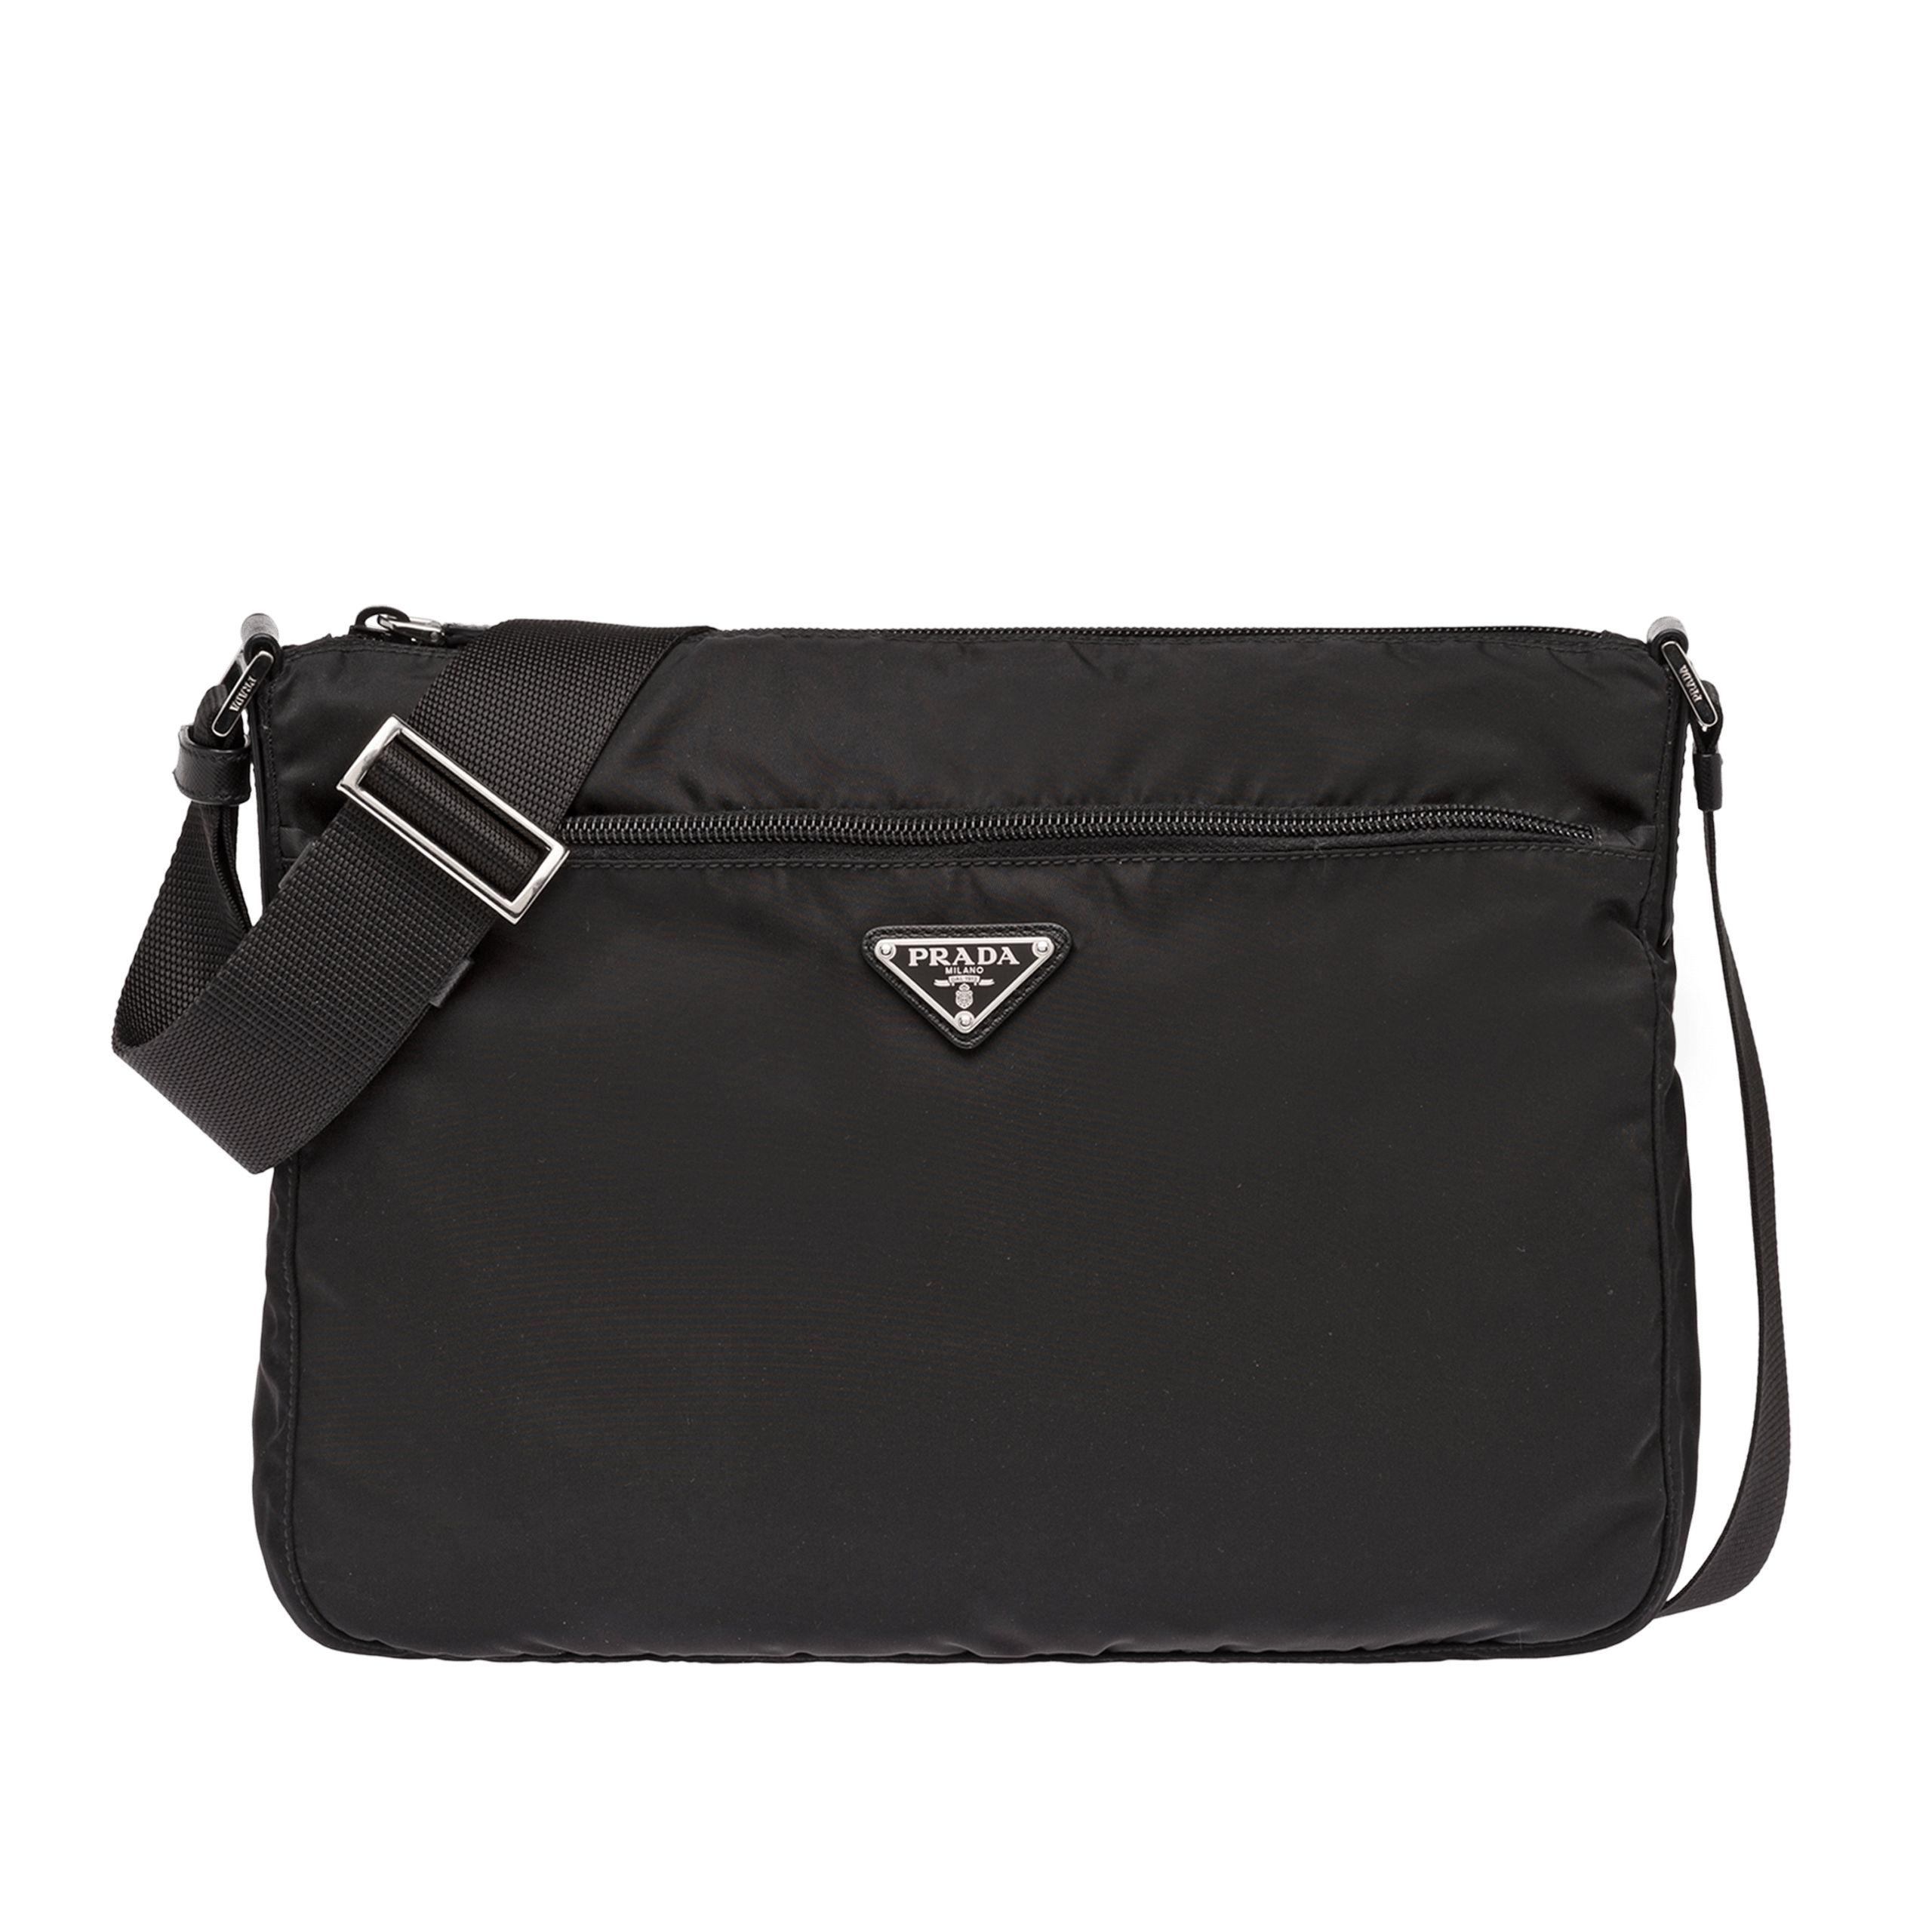 Prada Fabric Shoulder Bag in Black - Lyst